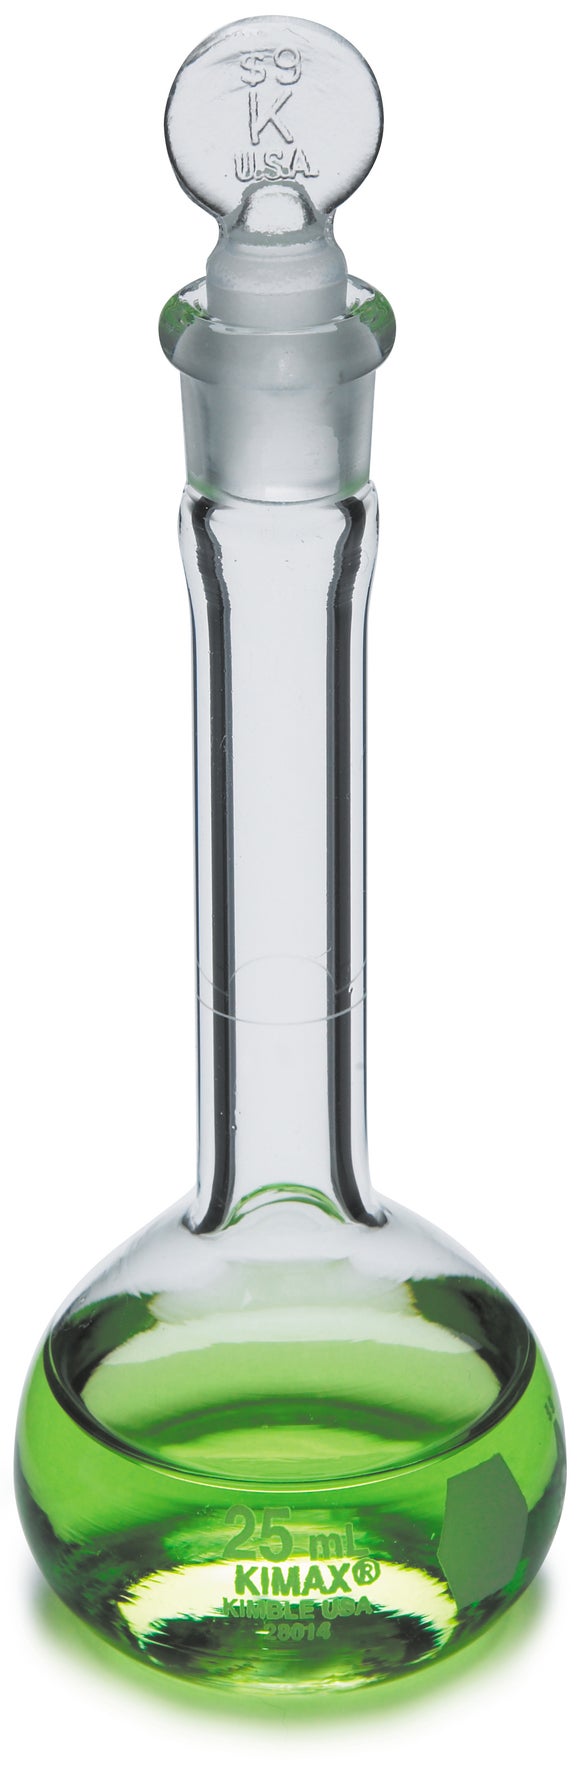 Flask, volumetric class A, glass, 50 mL